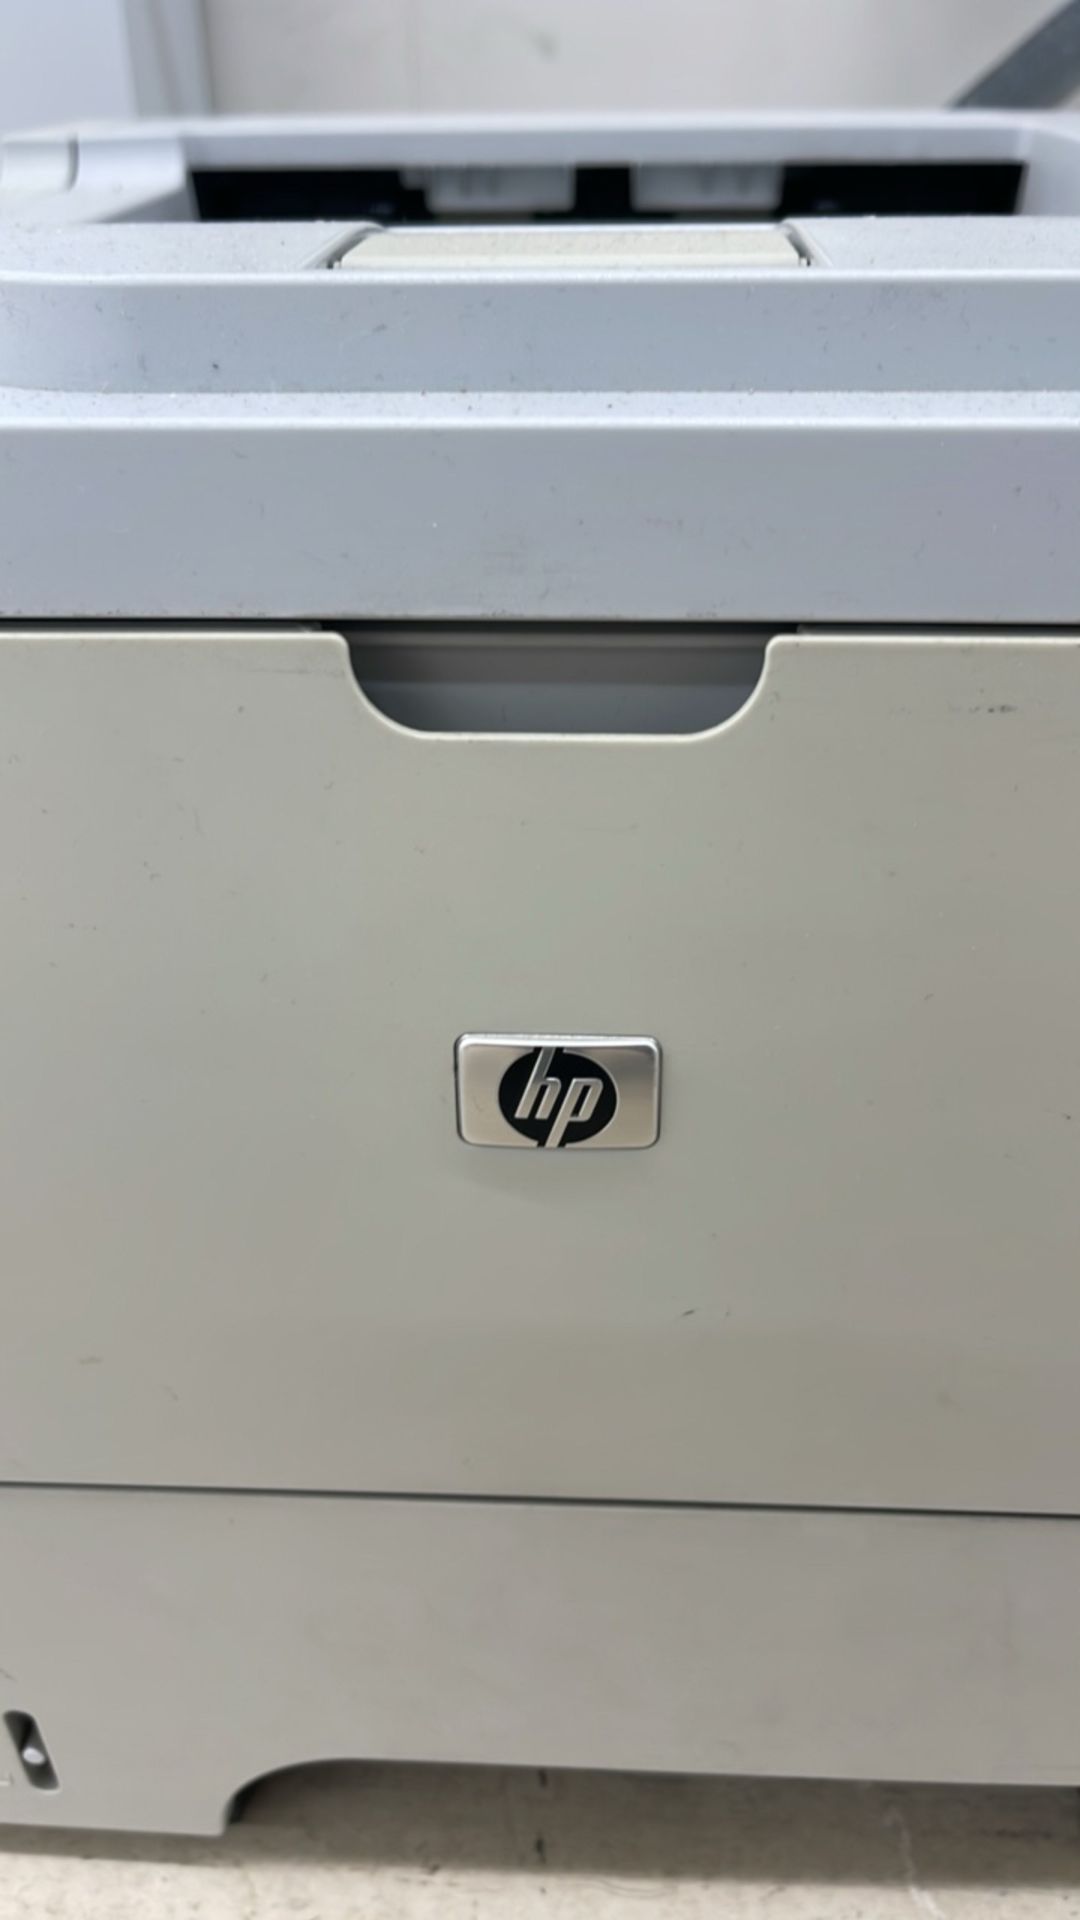 HP Laserjet Printer P3015 x 6 - Image 3 of 11